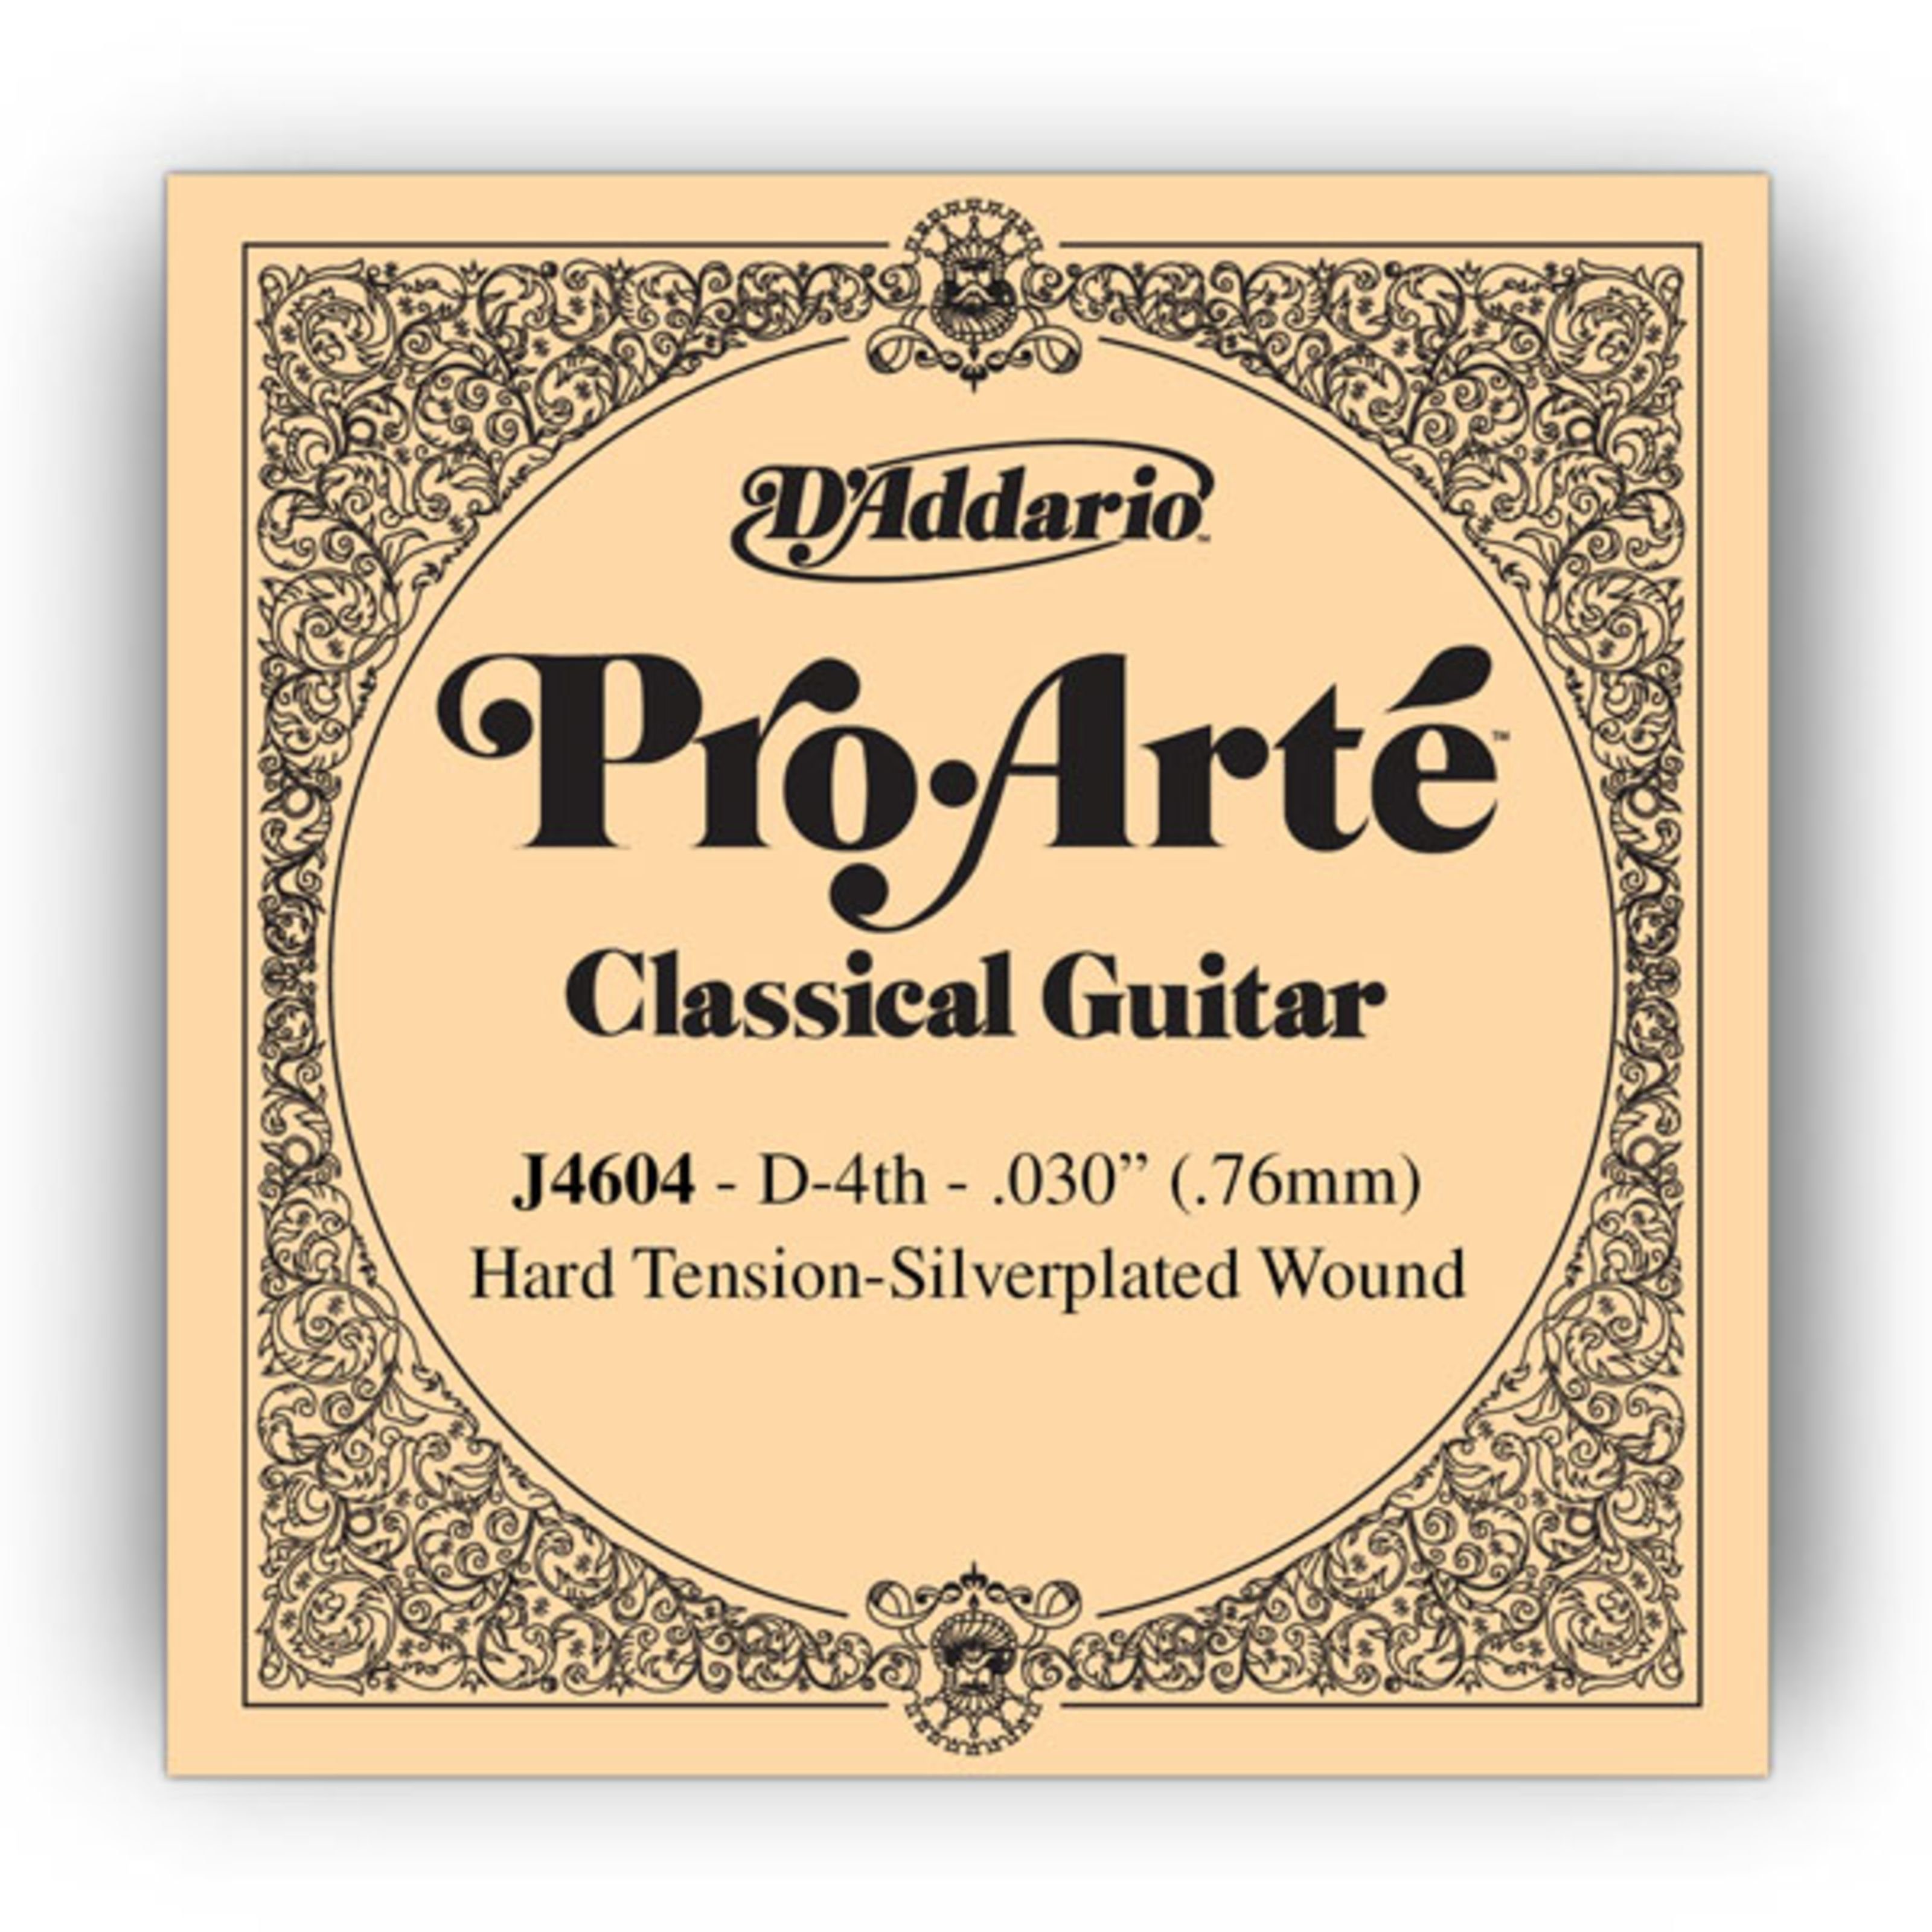 Daddario Spielzeug-Musikinstrument, J4604 D4 Pro Arte Einzelsaite Hard Tension 030/J46 - Einzelsaite für G | Musikspielzeug